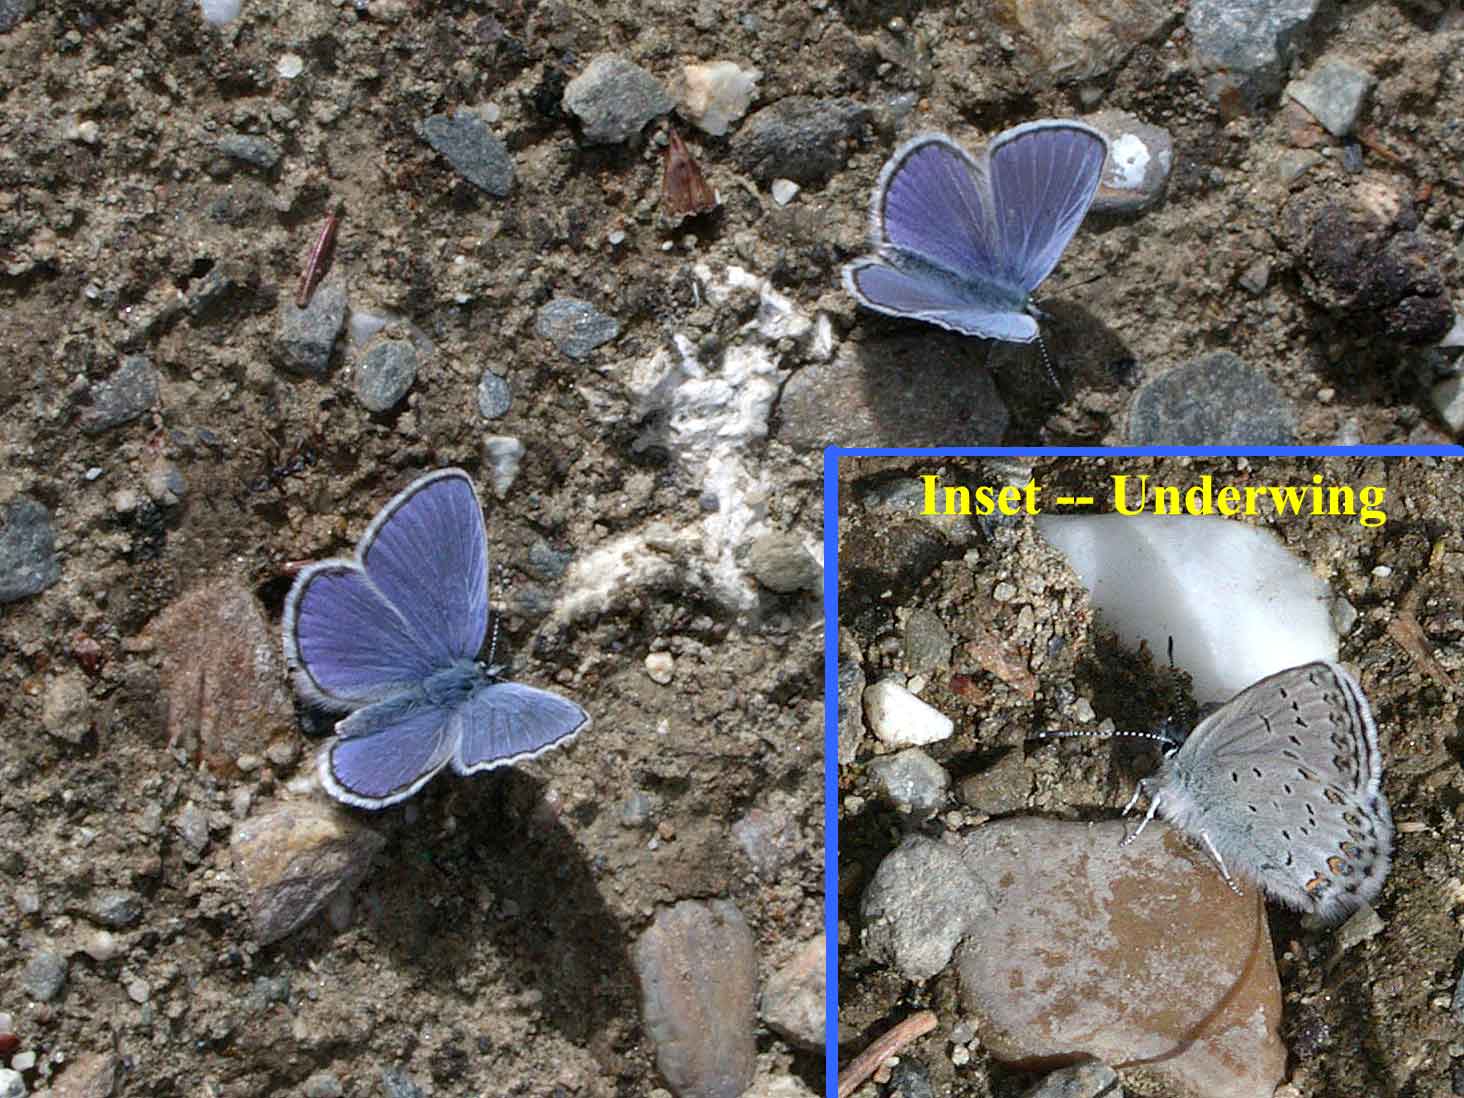 Northern Blue butterflies